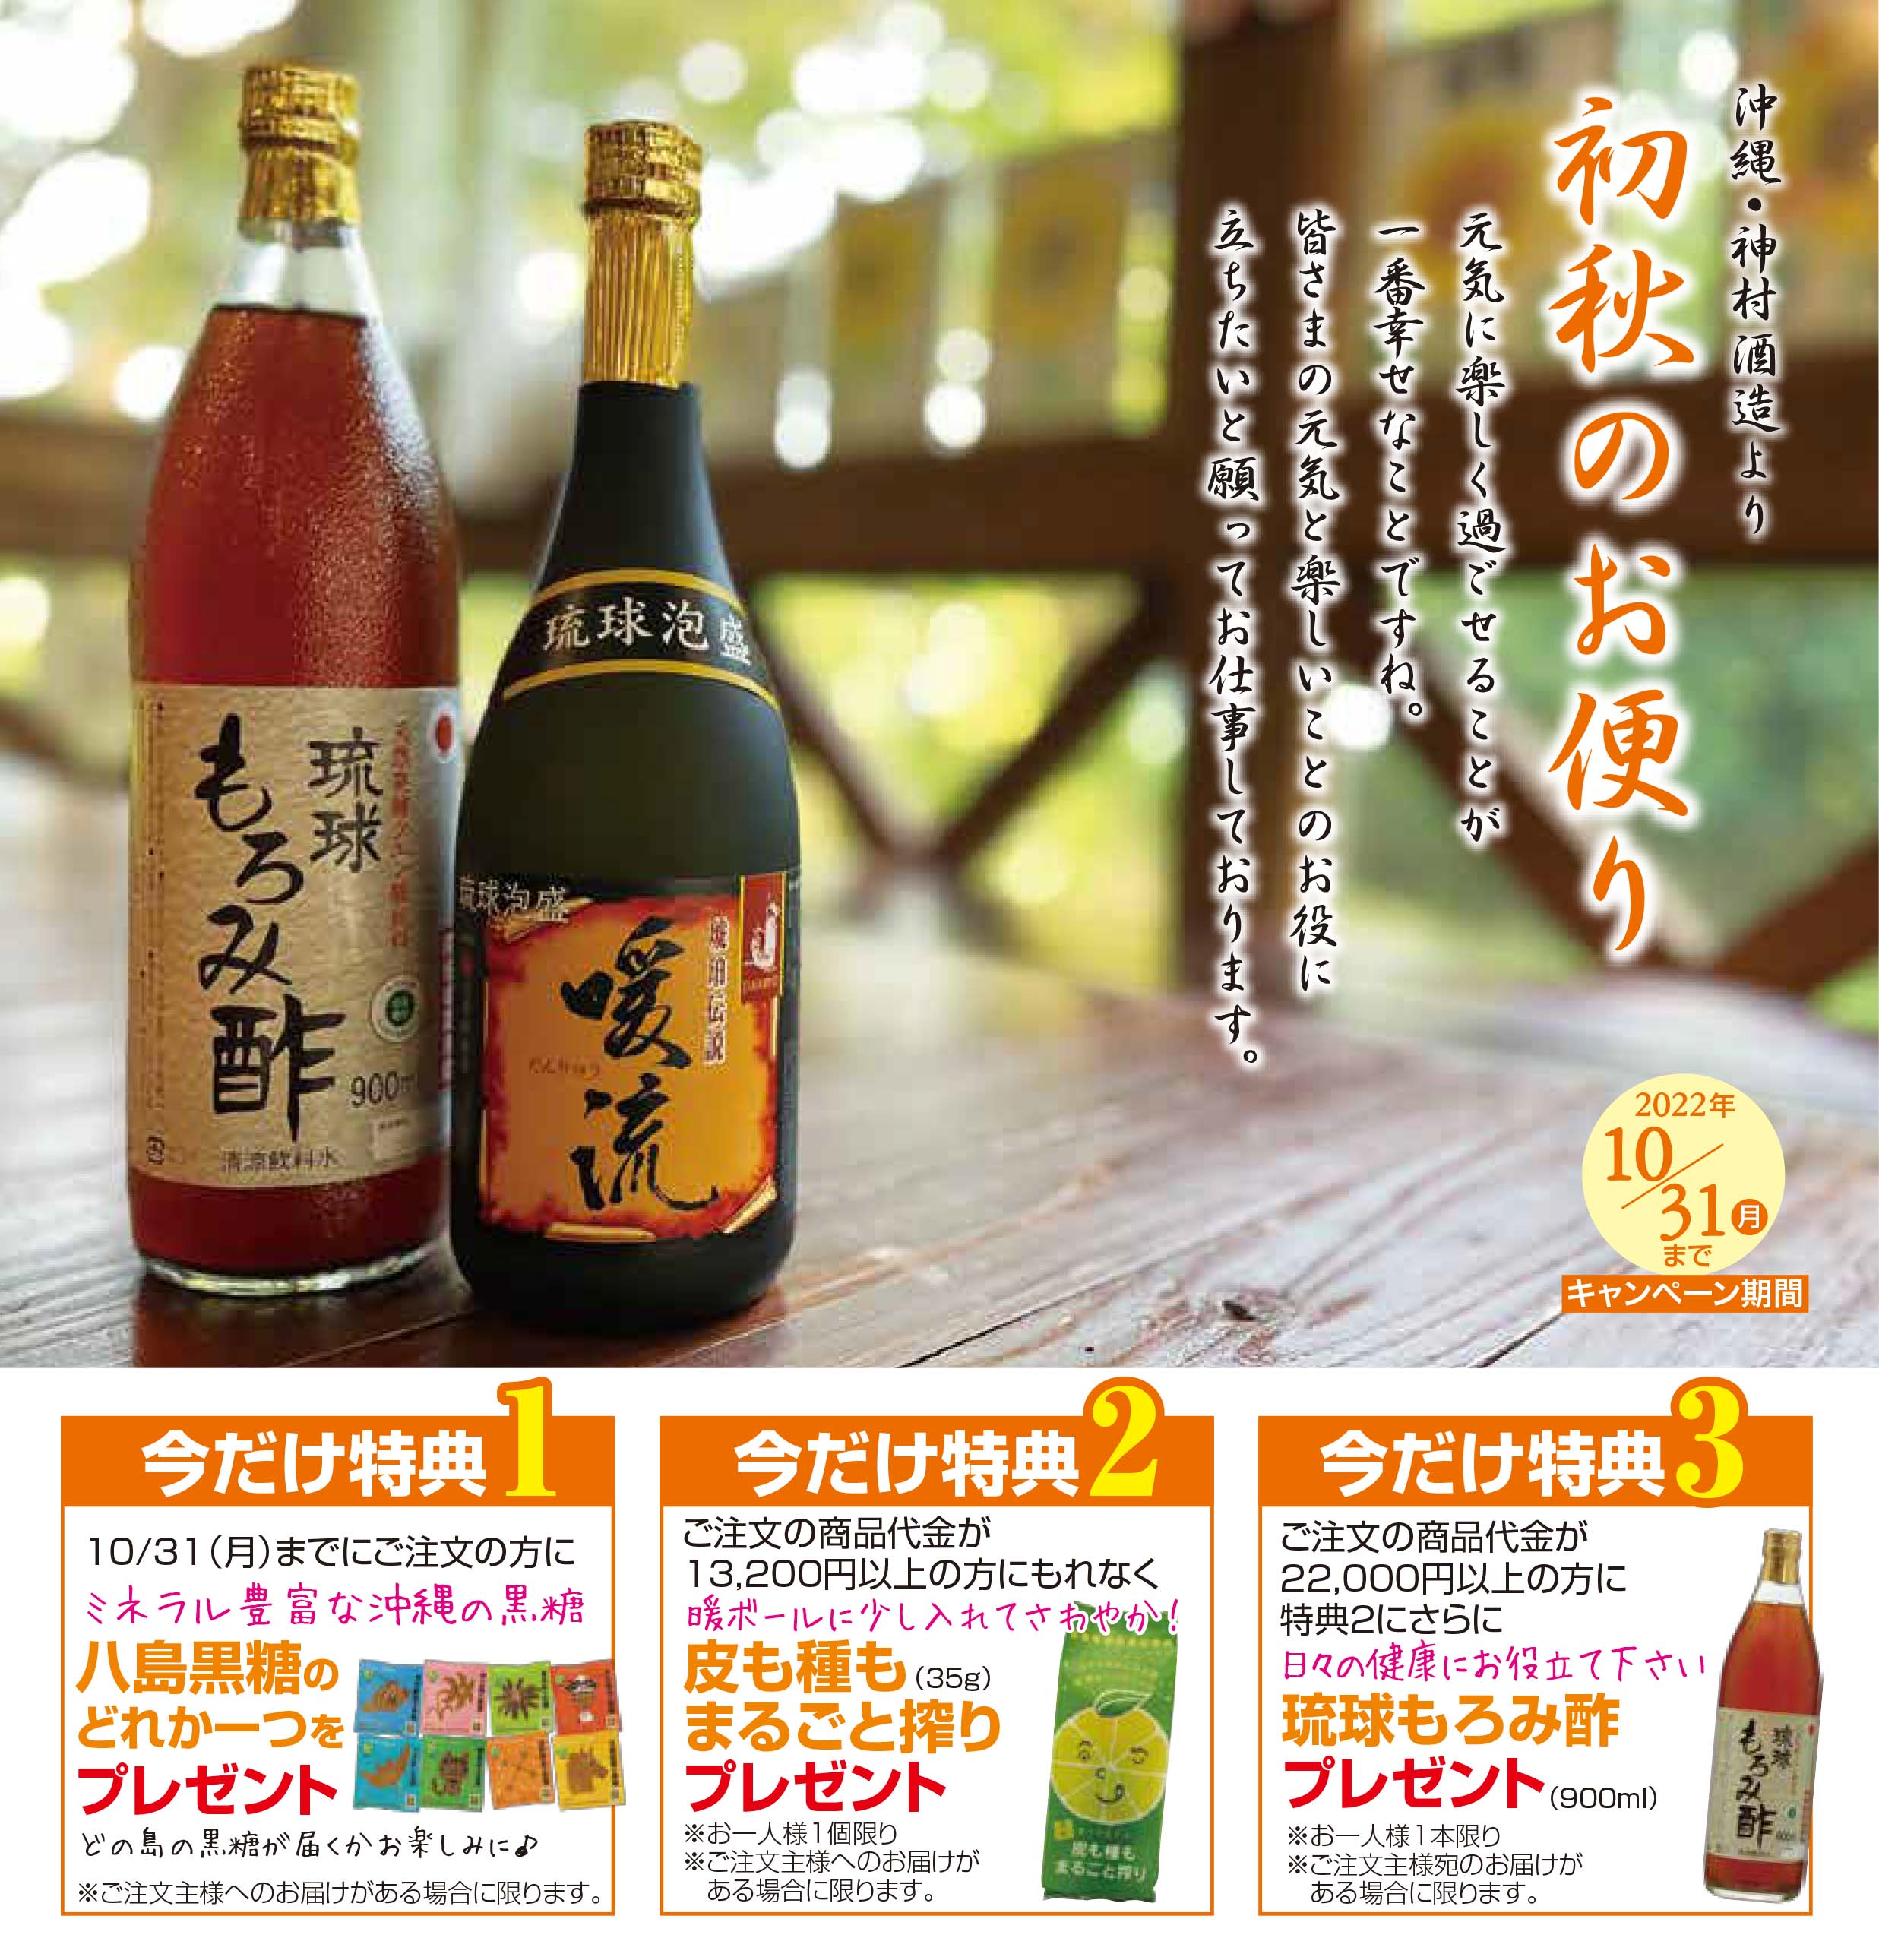 泡盛 沖縄県酒造協同組合 いちゃゆん 44度,720ml やんばる全12酒造所ブレンド酒